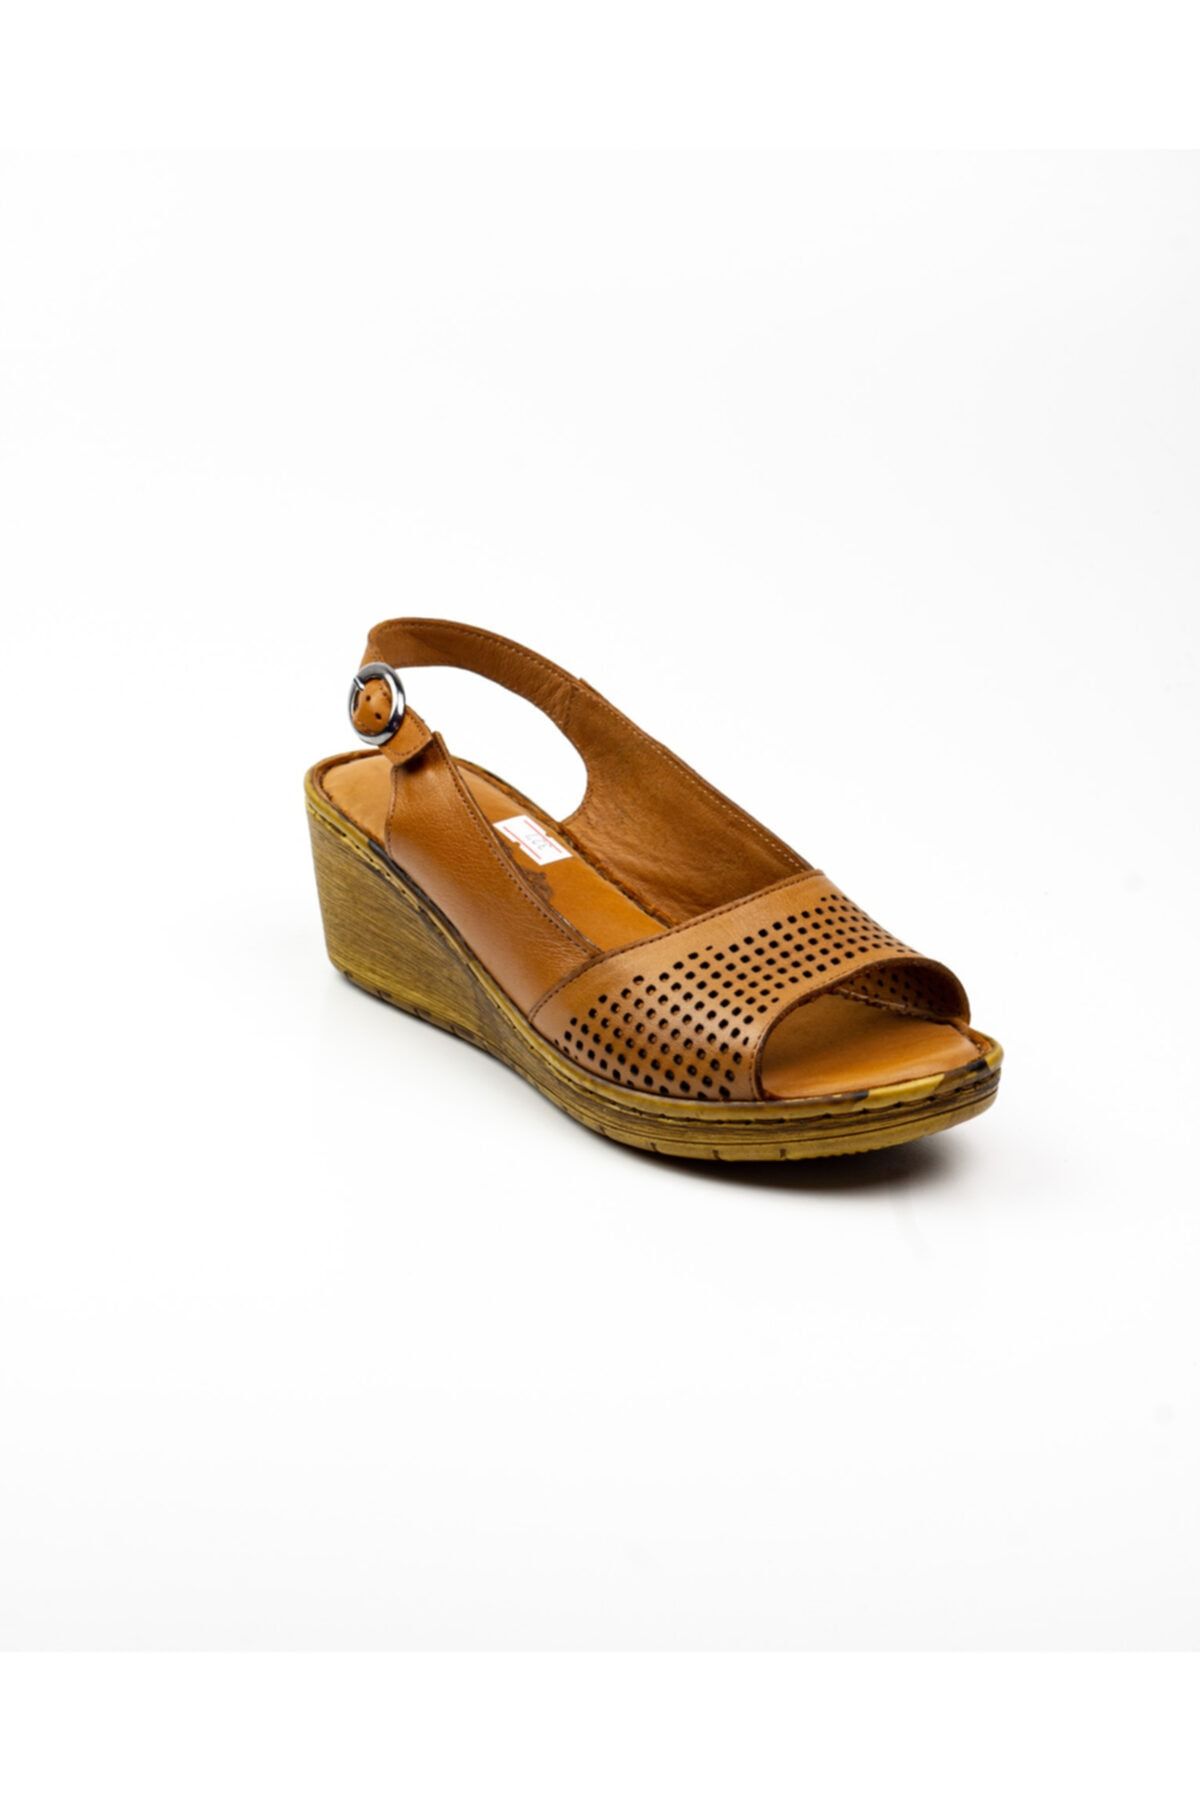 Scavia Kadın Kahverengi Deri Sandalet 327